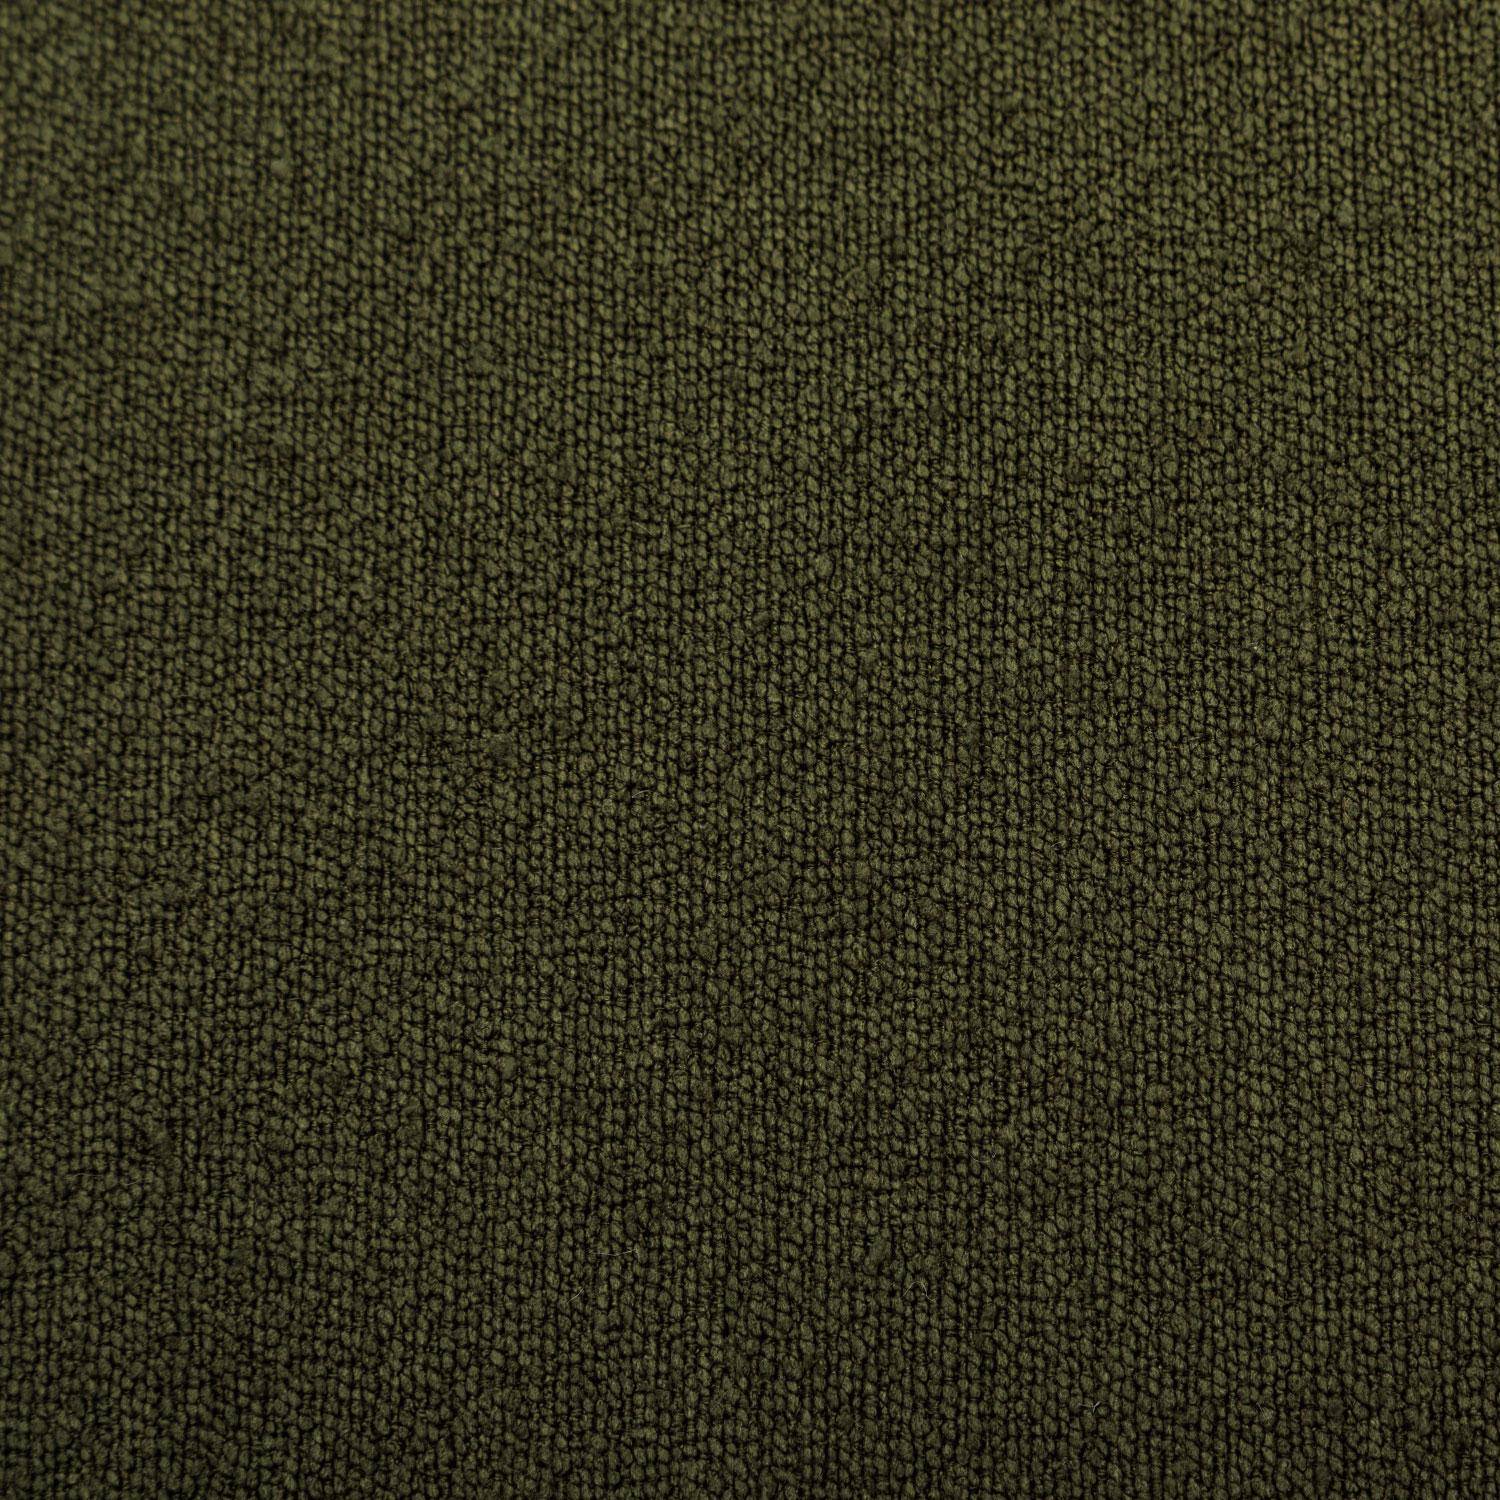 Hocker in Kieselsteinform mit khakifarbenem Stoffbezug, B 60 x T 44 x H 40 cm - Tao,sweeek,Photo6